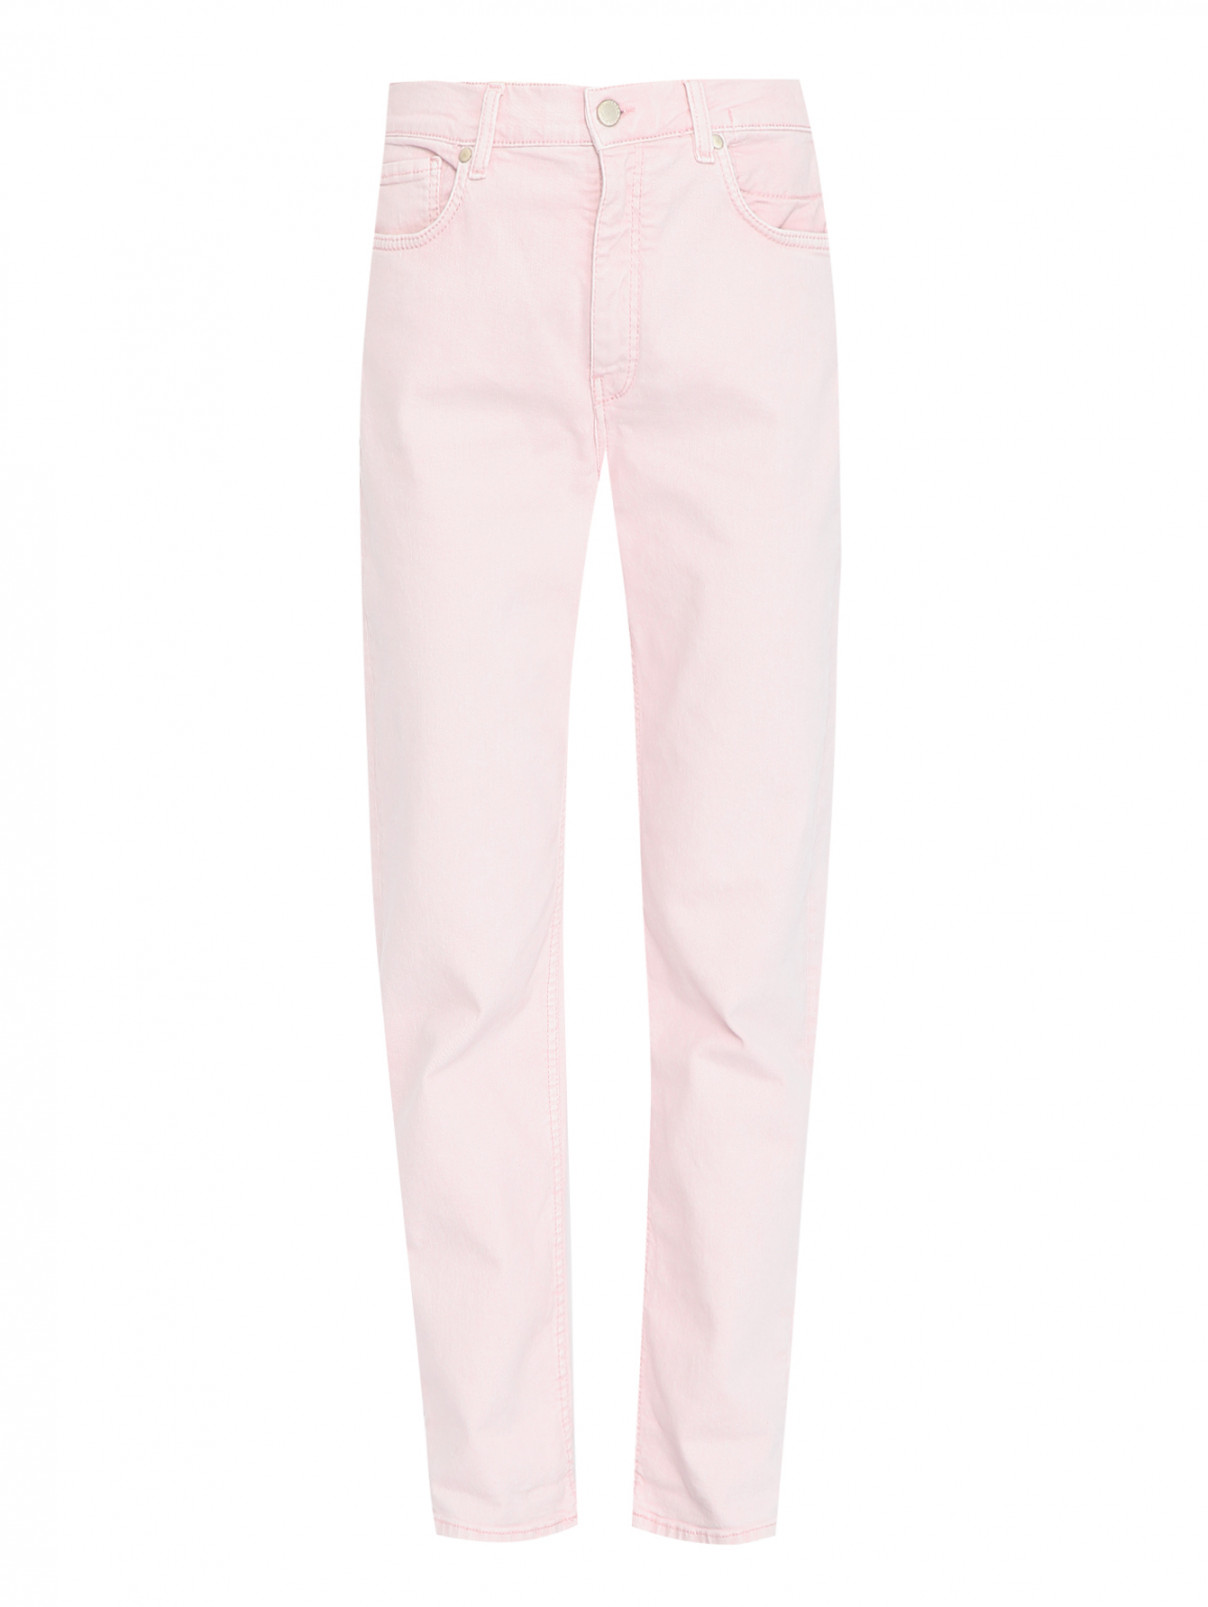 Джинсы из хлопка с карманами Dorothee Schumacher  –  Общий вид  – Цвет:  Розовый